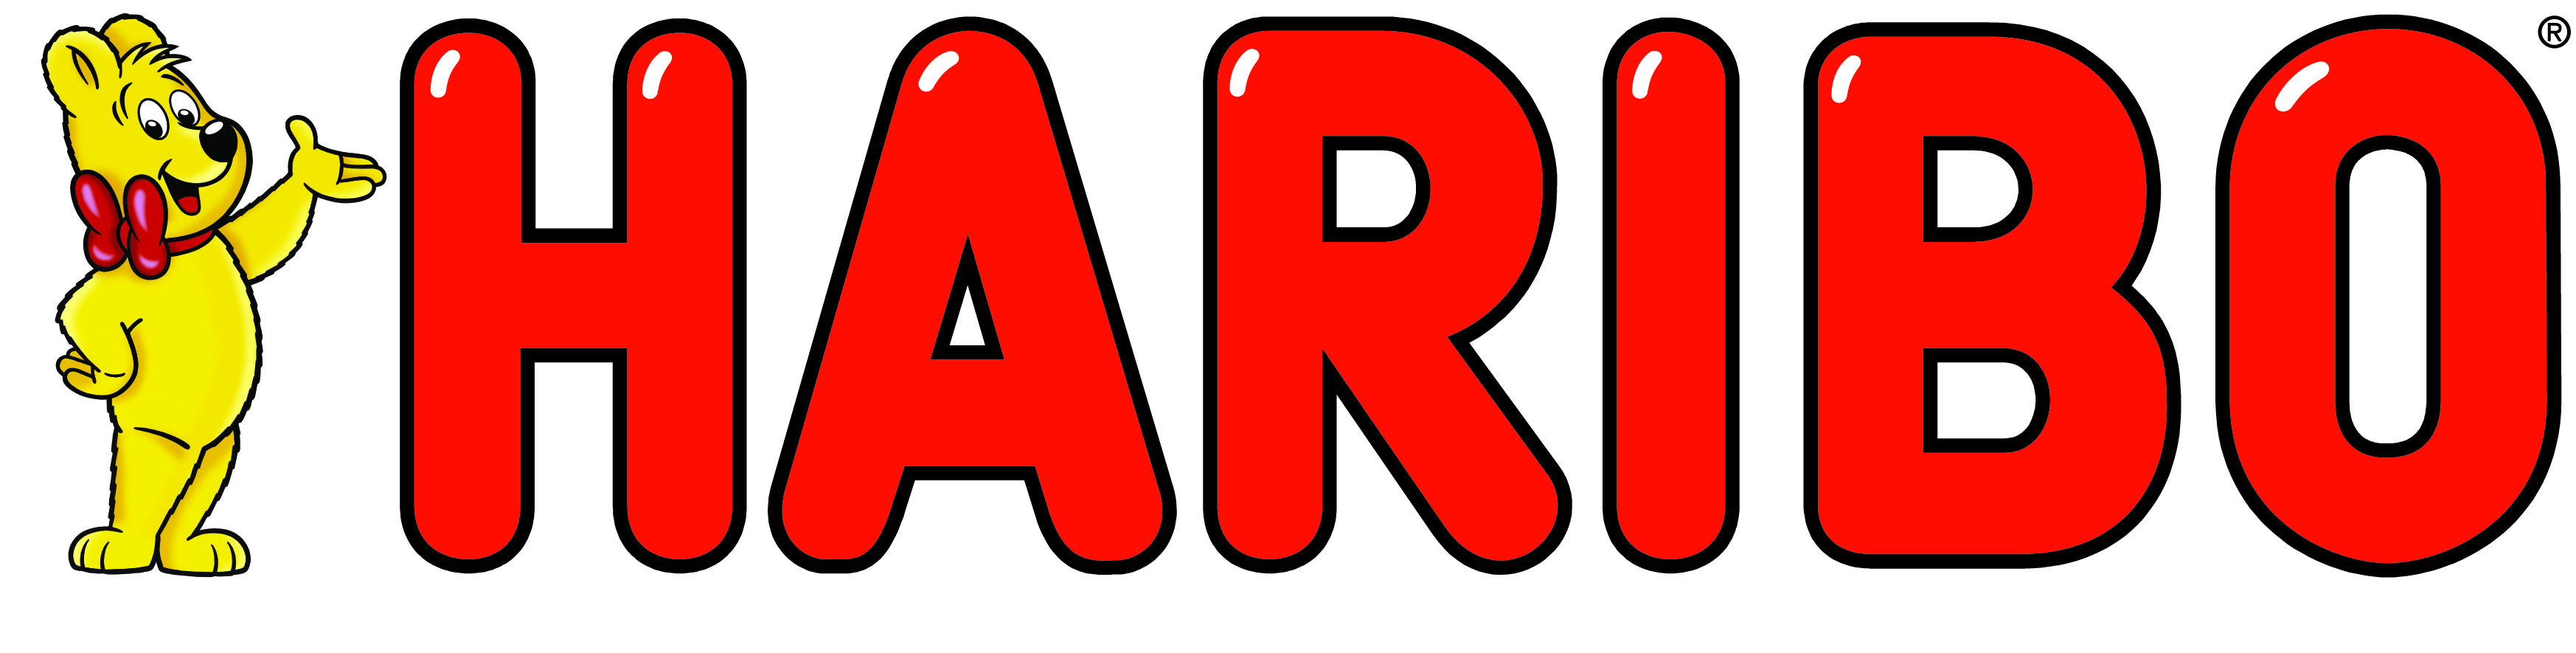 Haribo Logos